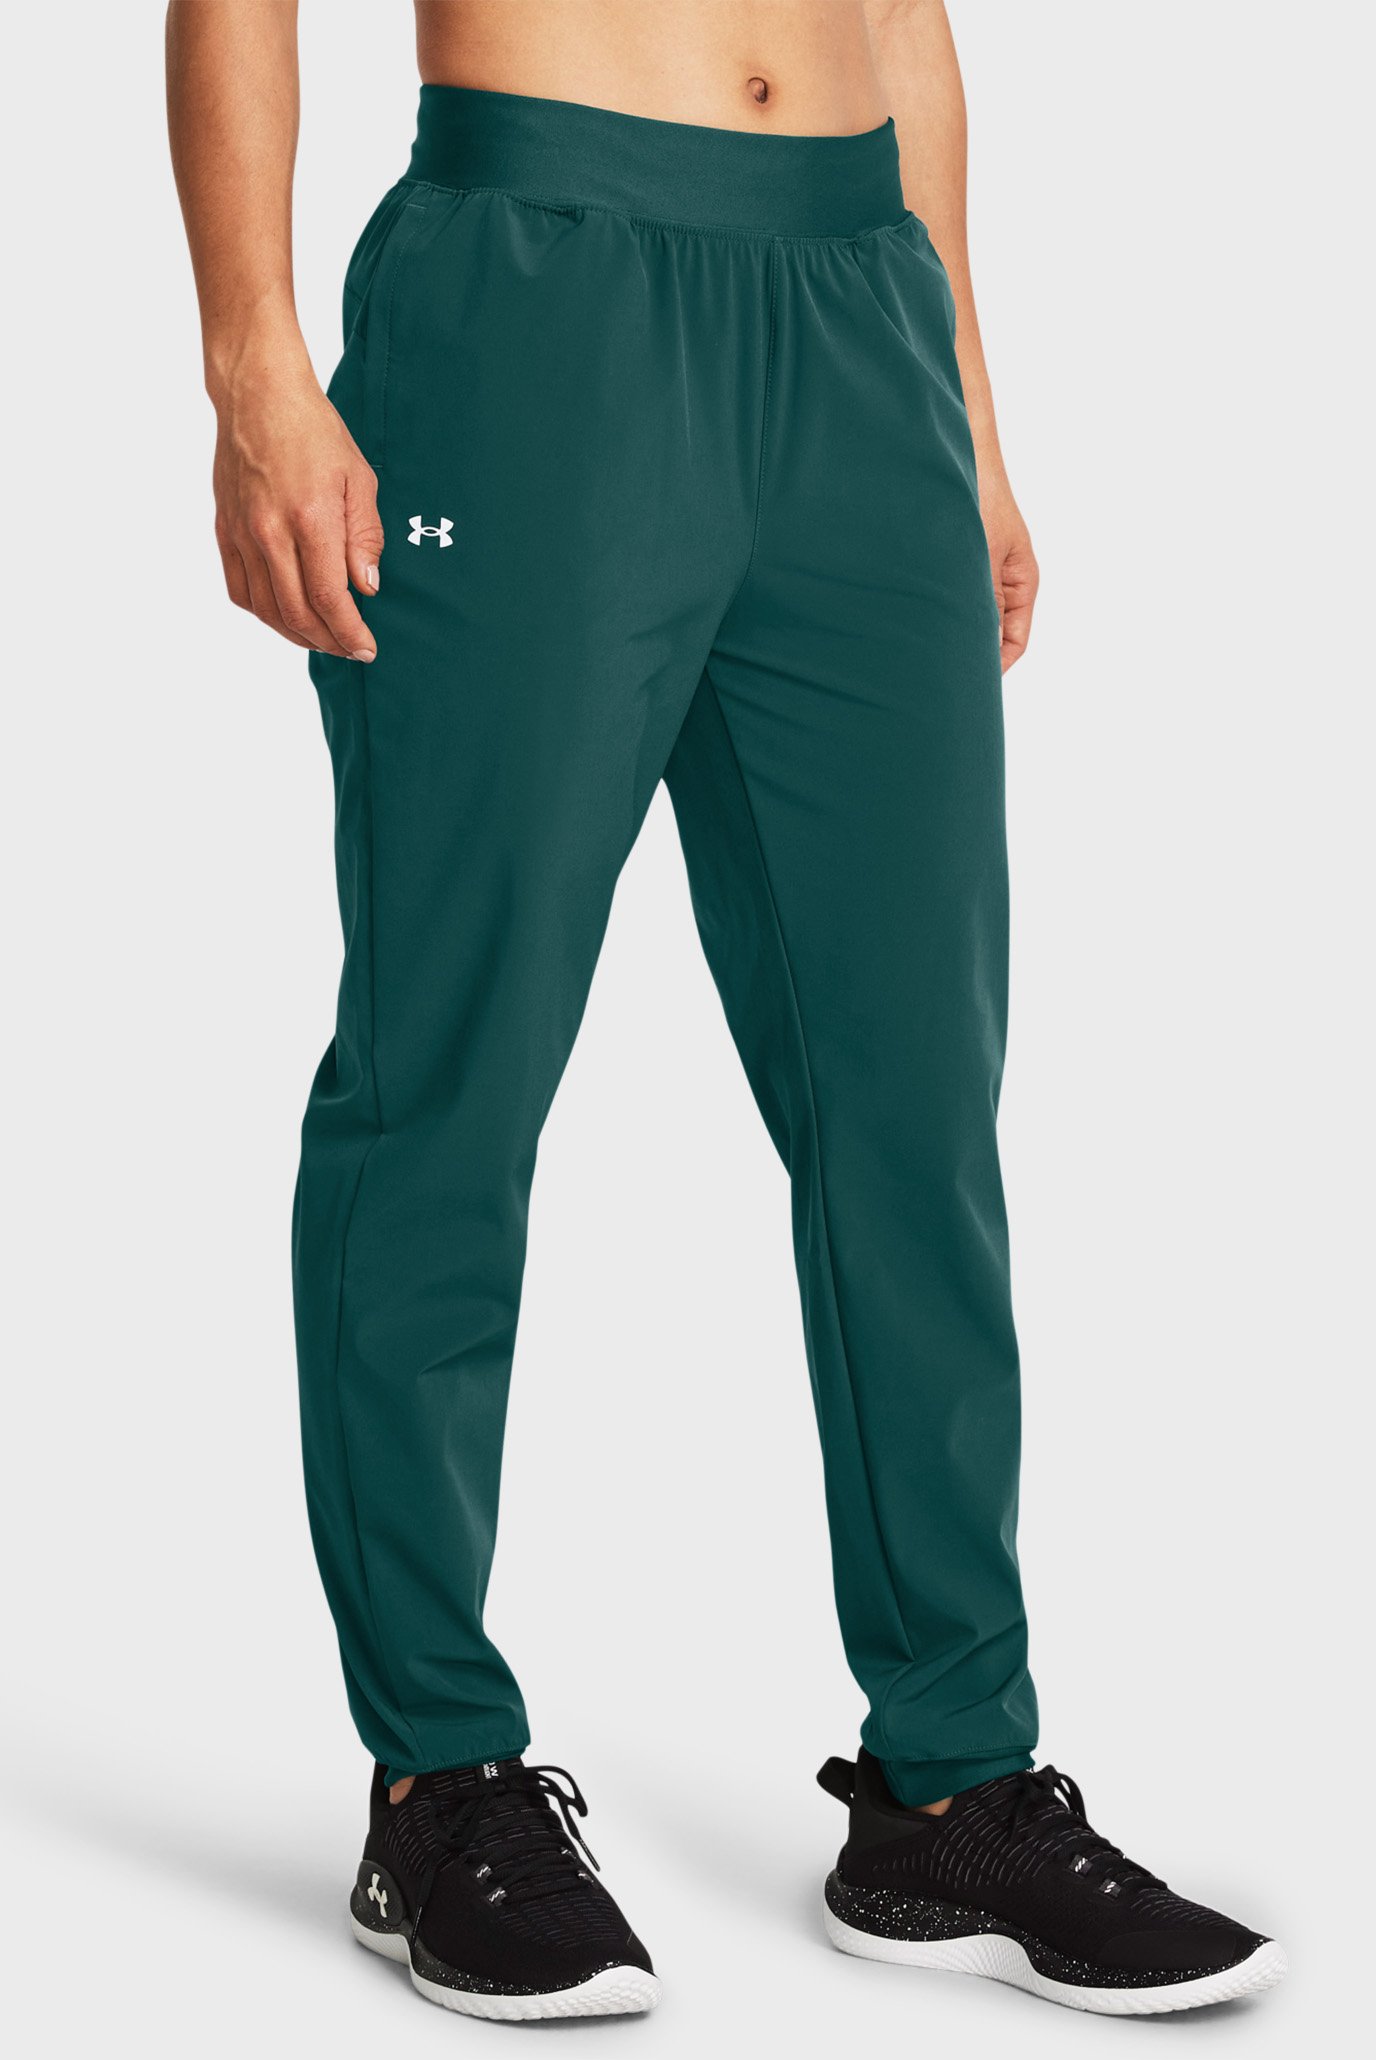 Женские зеленые спортивные брюки ArmourSport High Rise Wvn Pnt 1